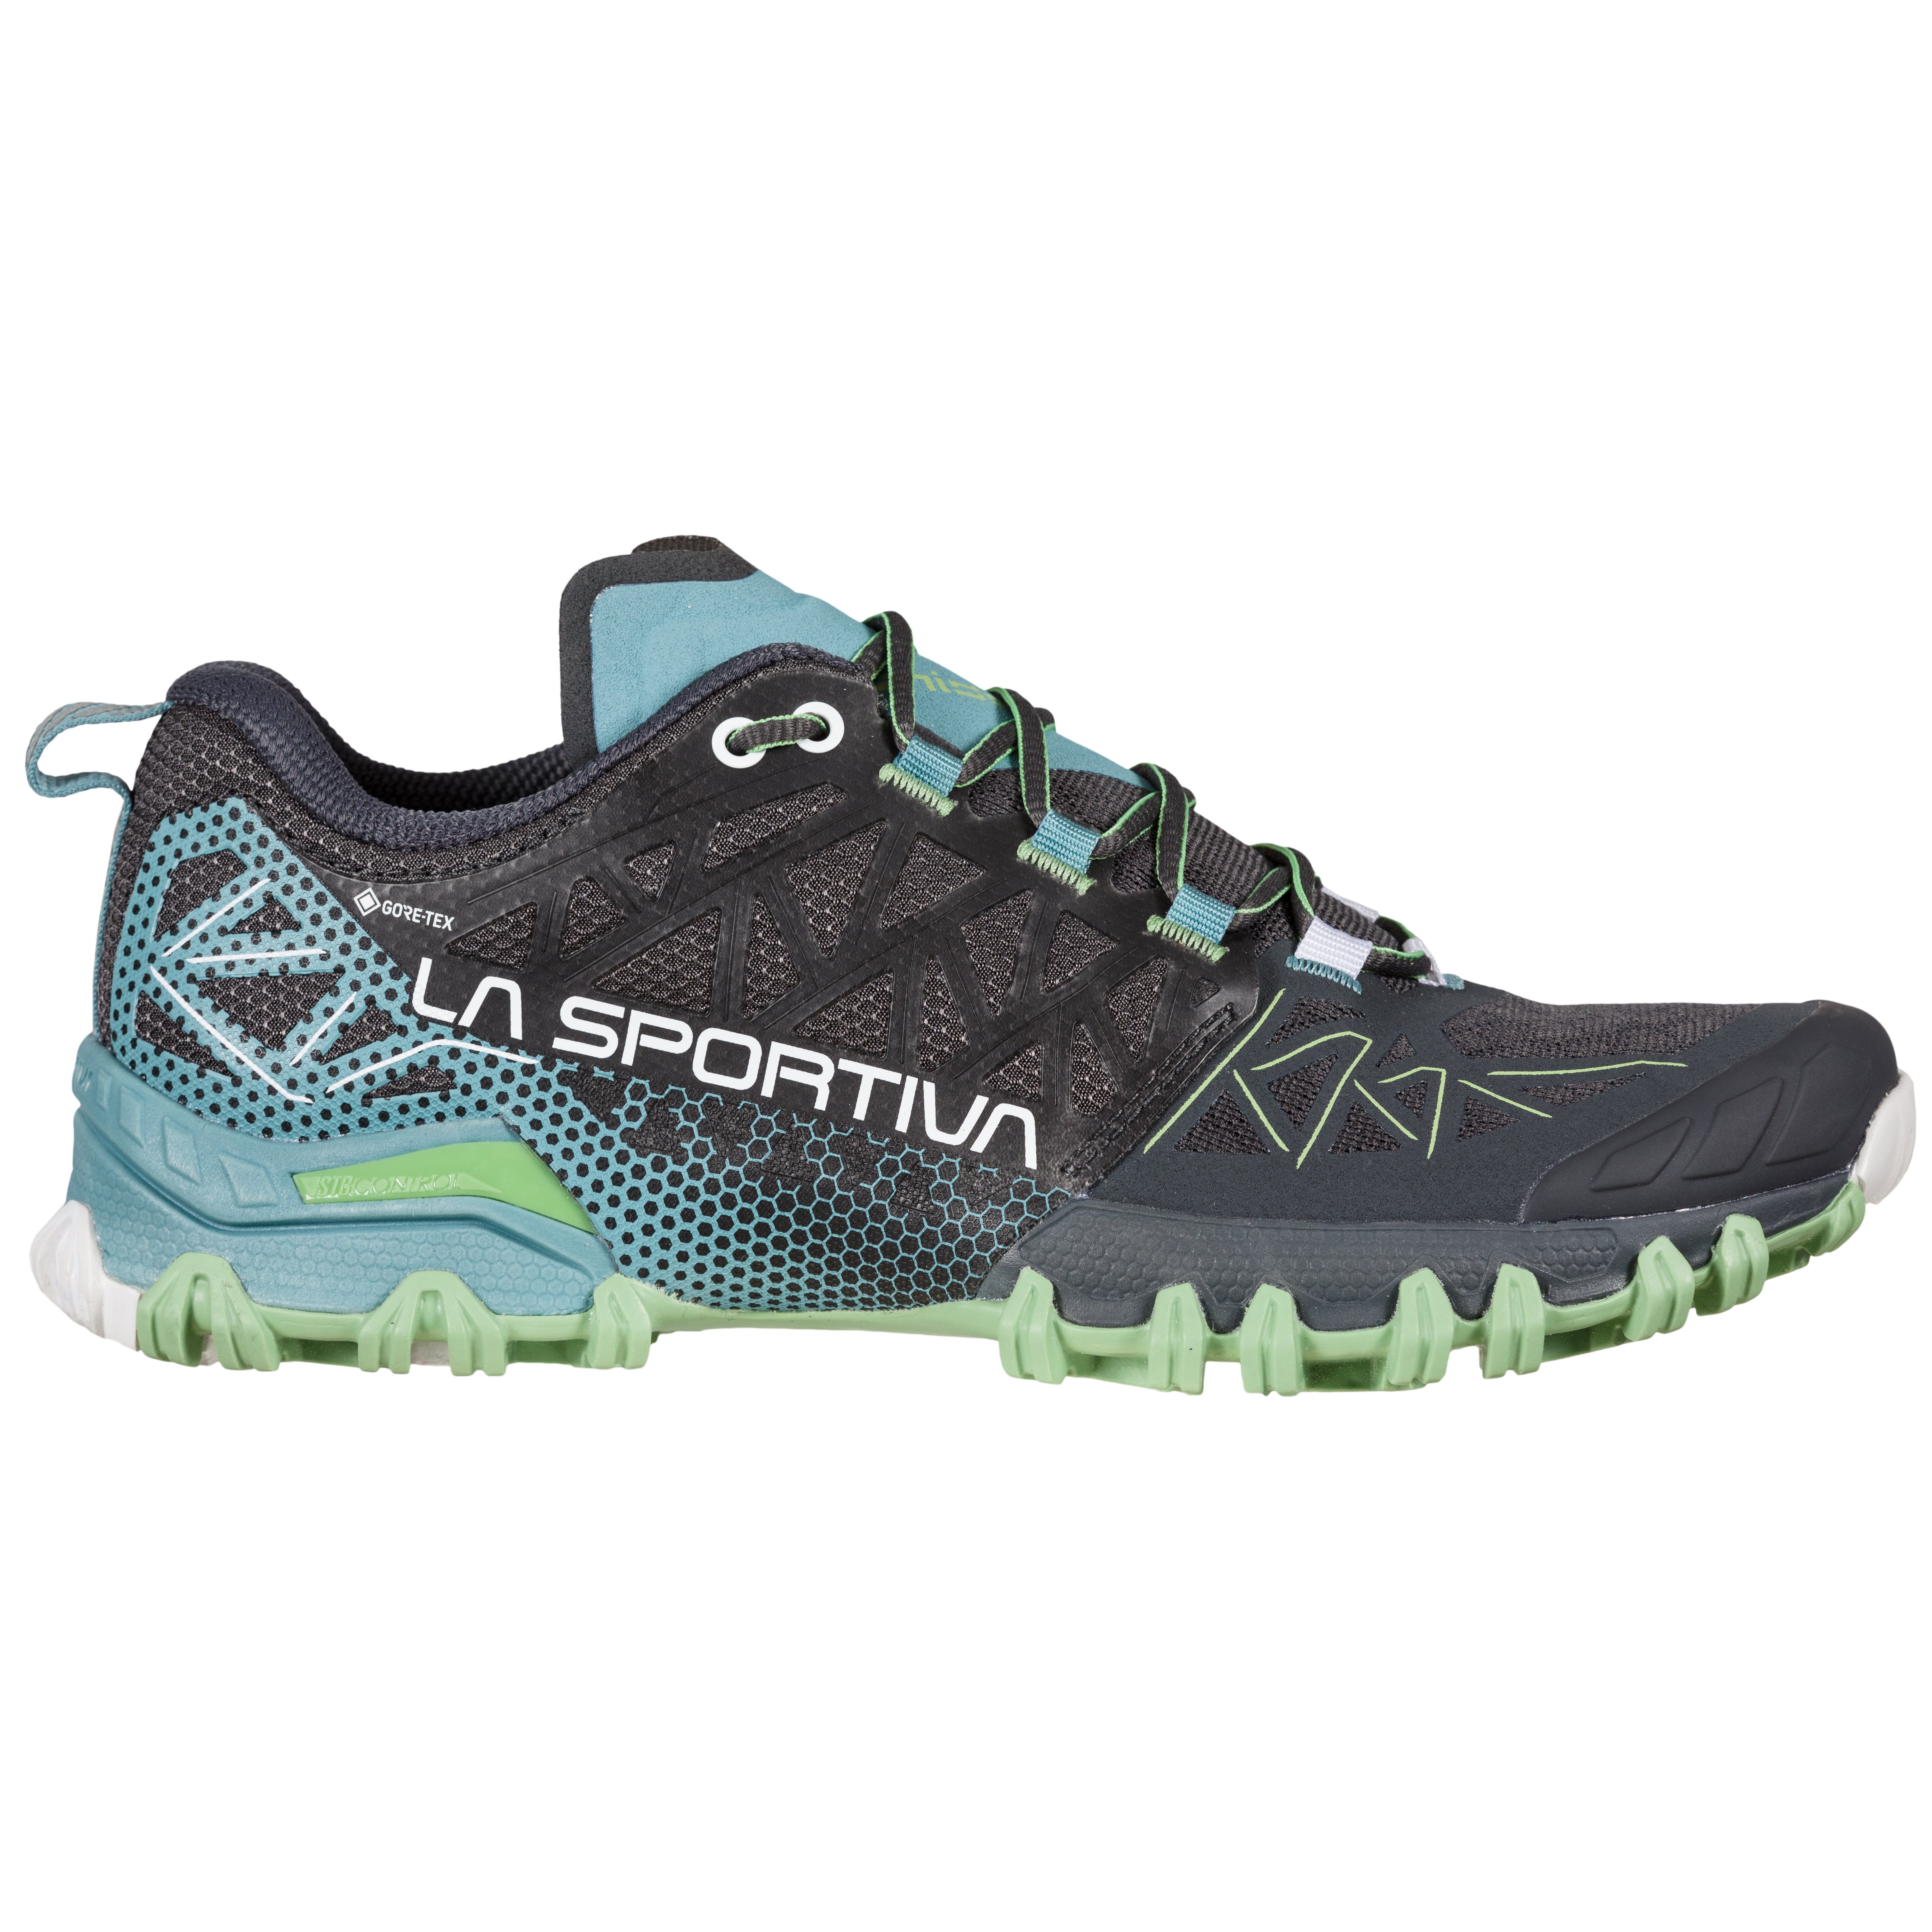 La Sportiva Lycan GTX - Zapatillas de trail running Hombre, Envío gratuito